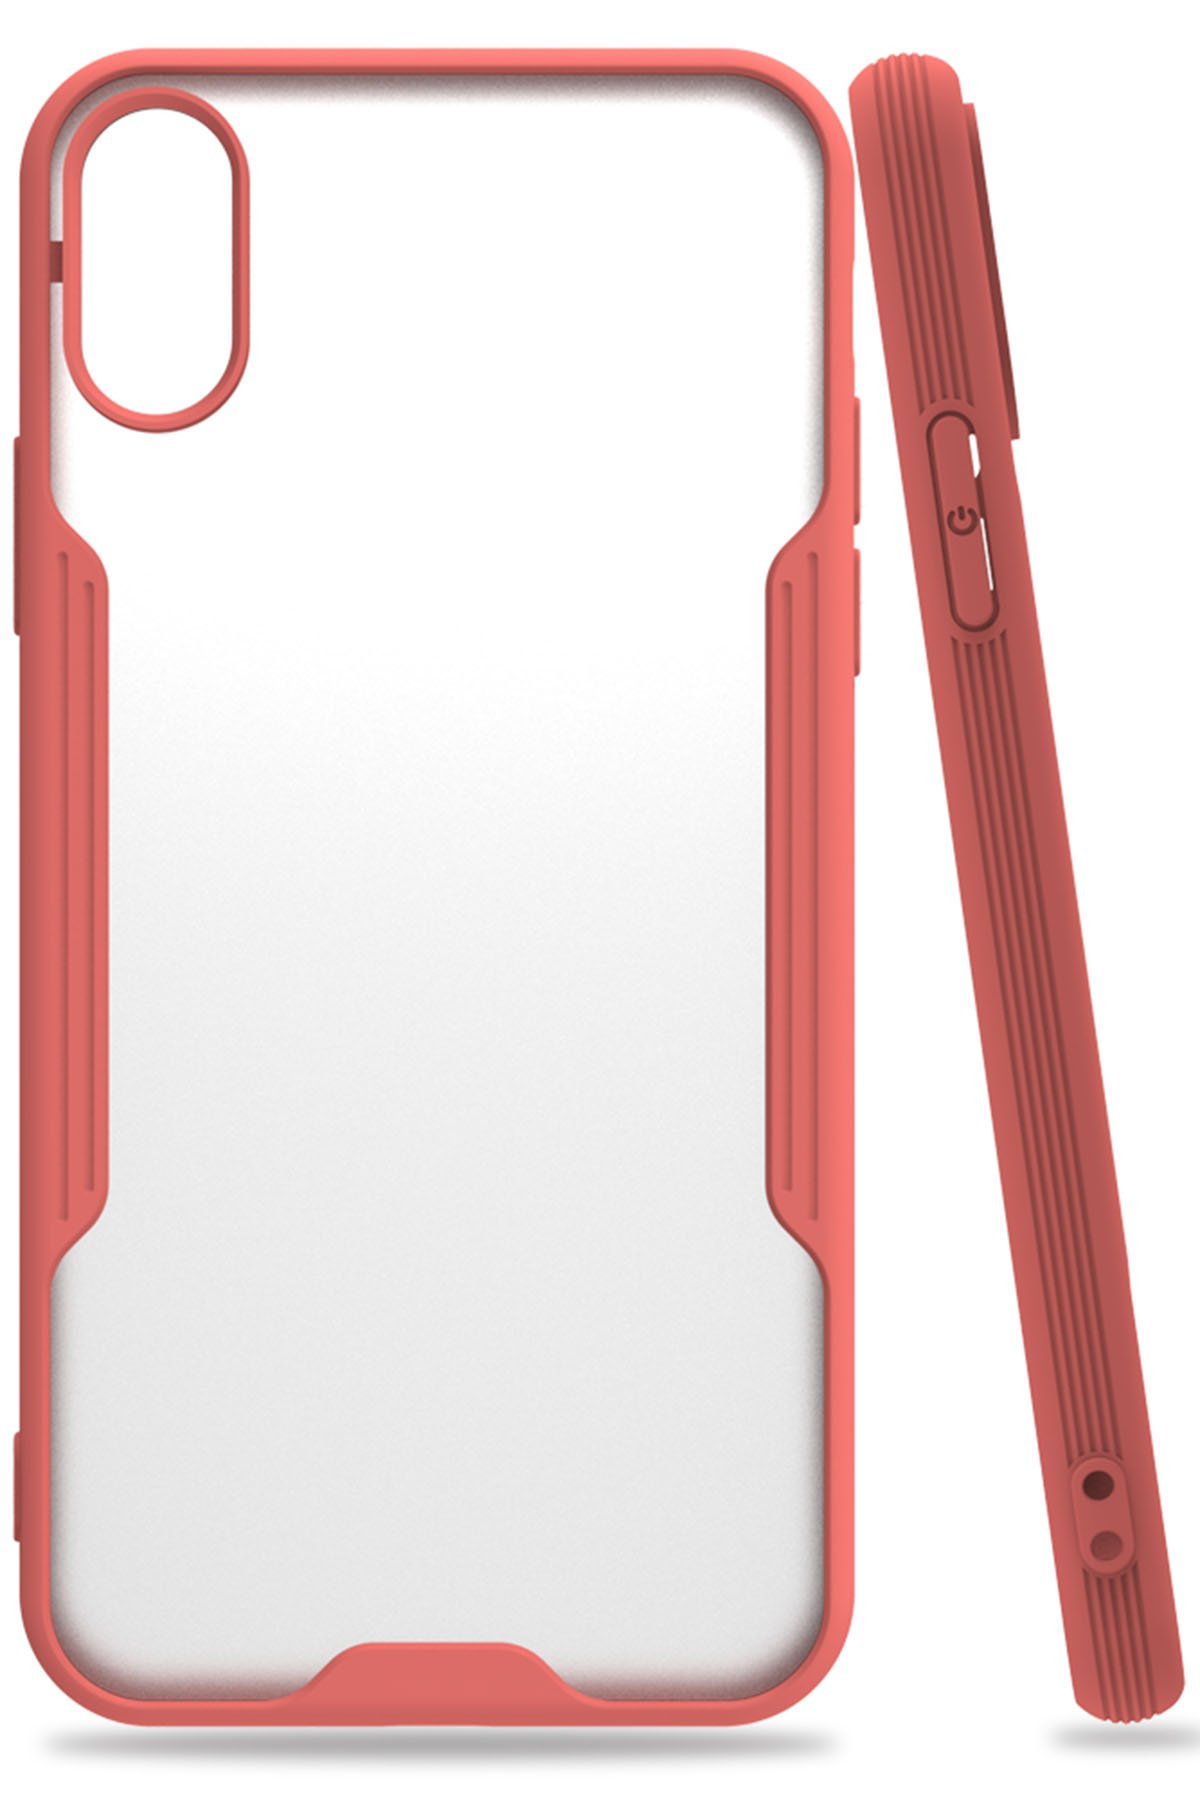 Newface iPhone X Kılıf Coco Deri Silikon Kapak - Kırmızı